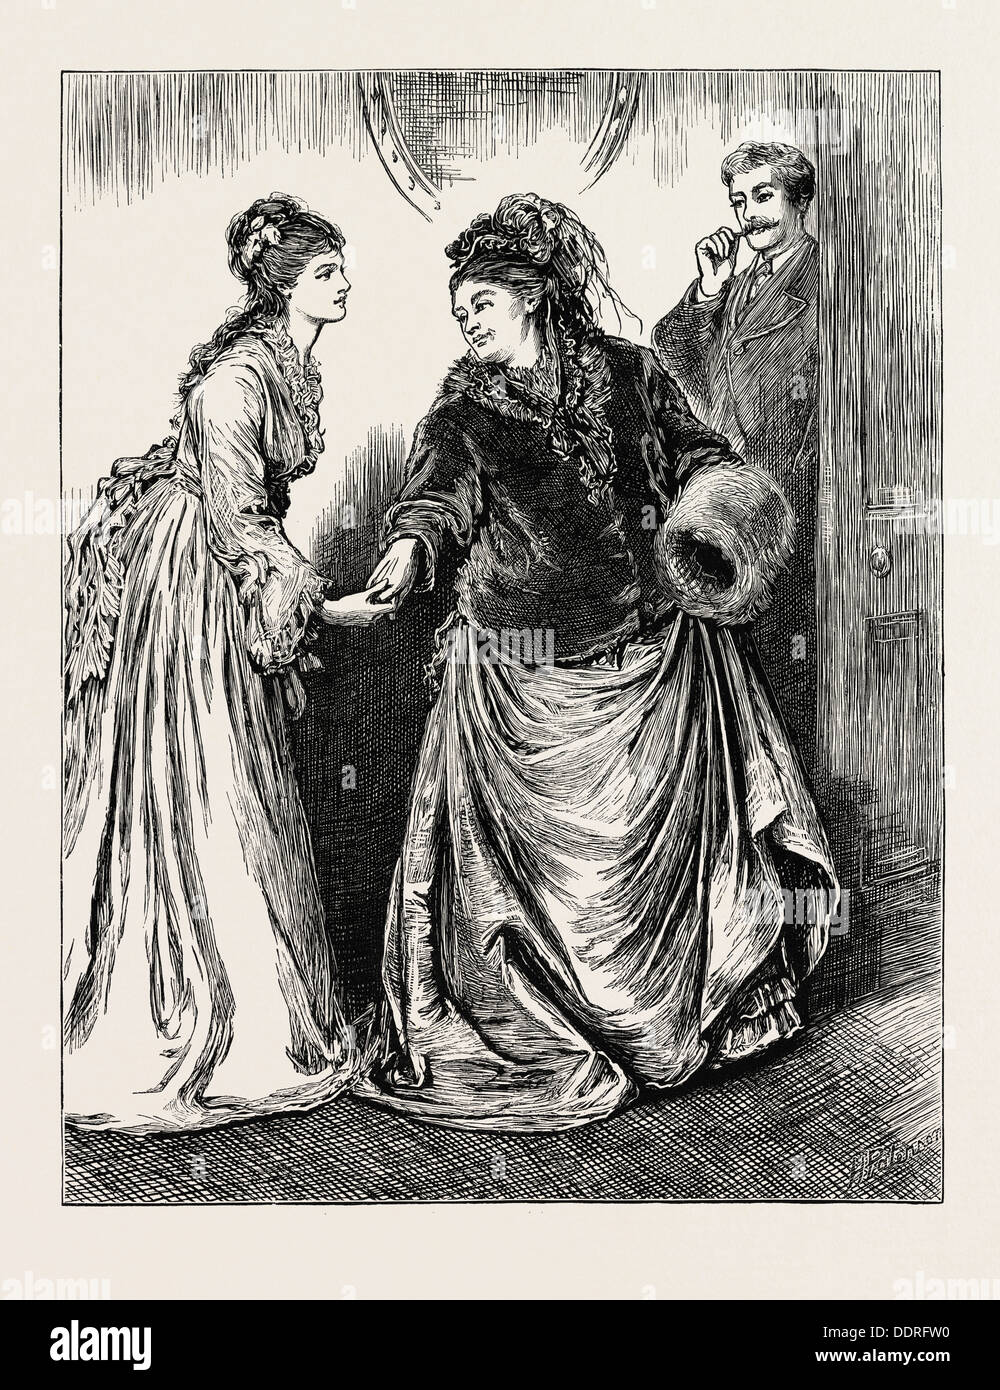 Inocentes: un relato de la vida moderna, por la Sra. Oliphant, grabado en 1873. Foto de stock